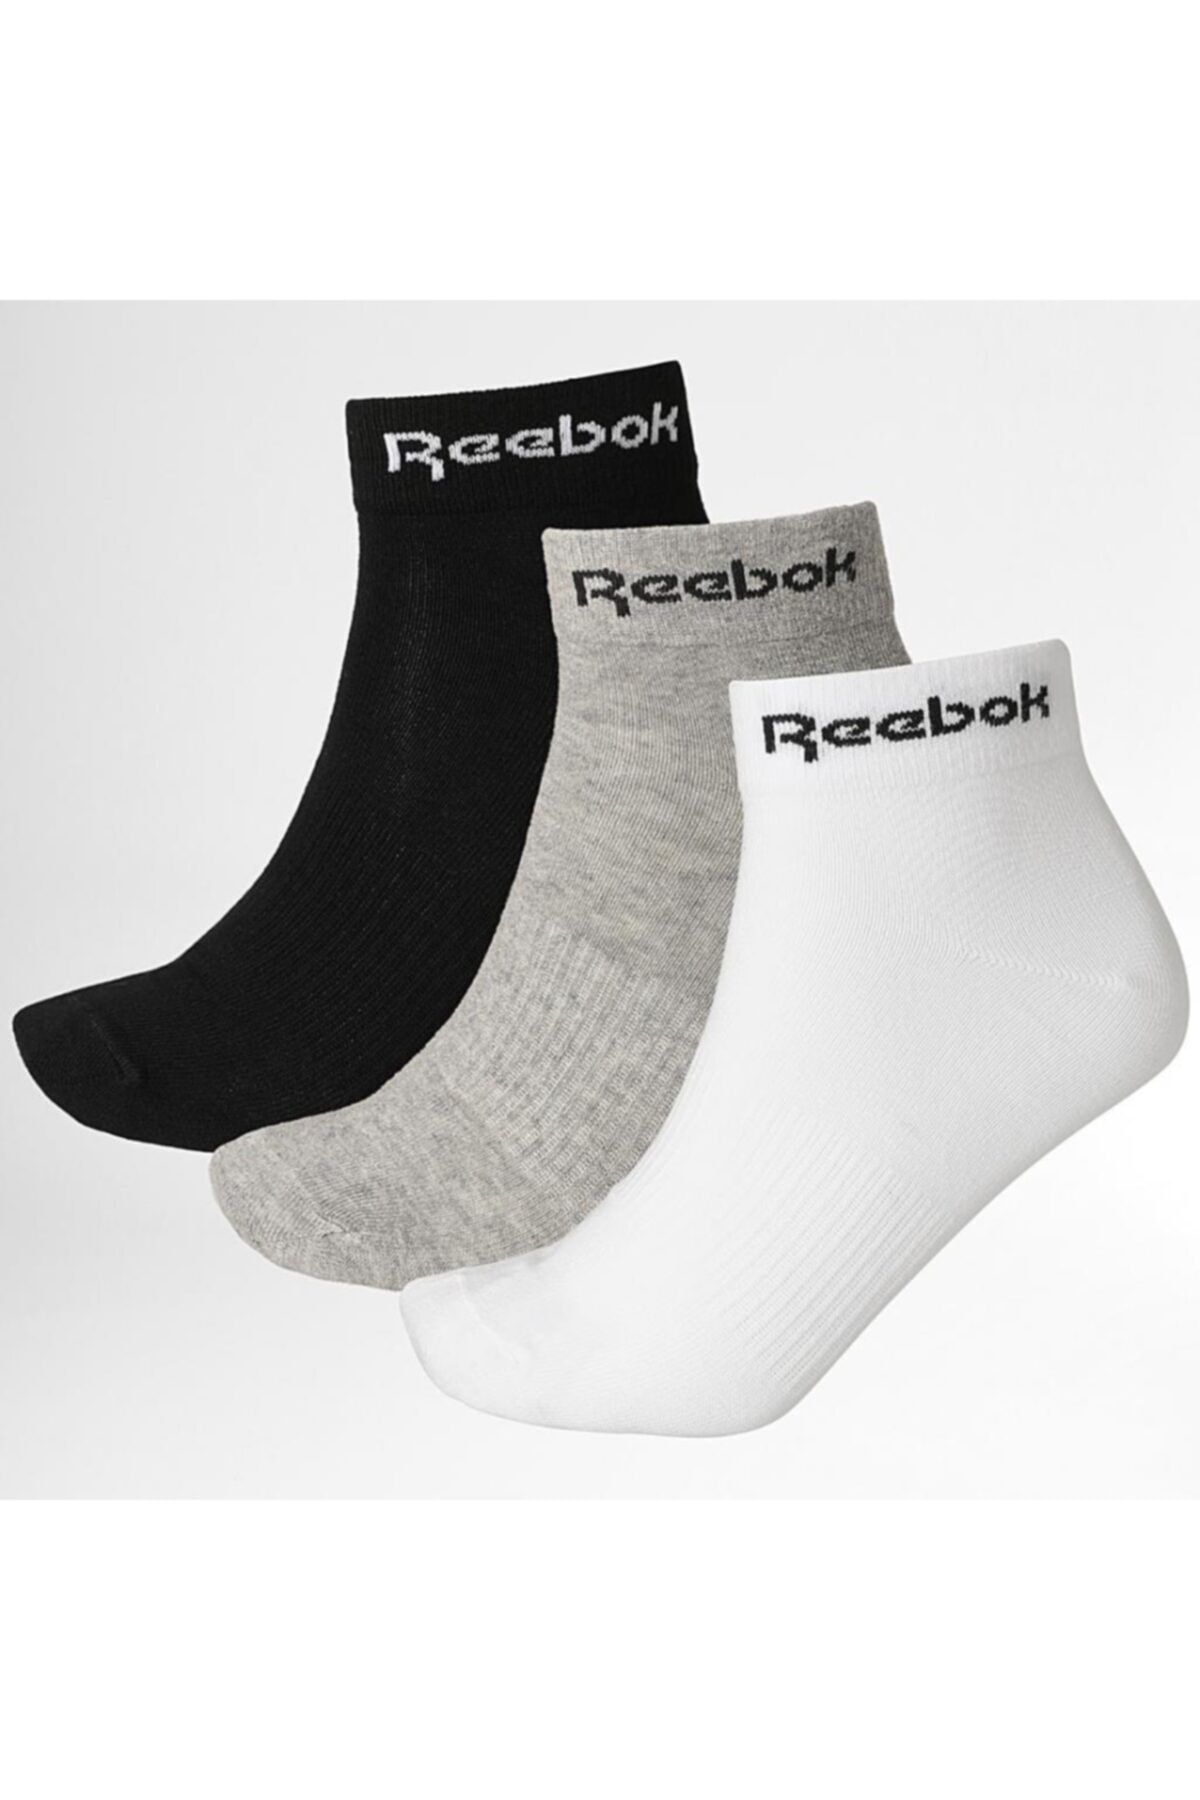 Reebok Unisex Beyaz Spor Çorap 3 Çift Gh8168